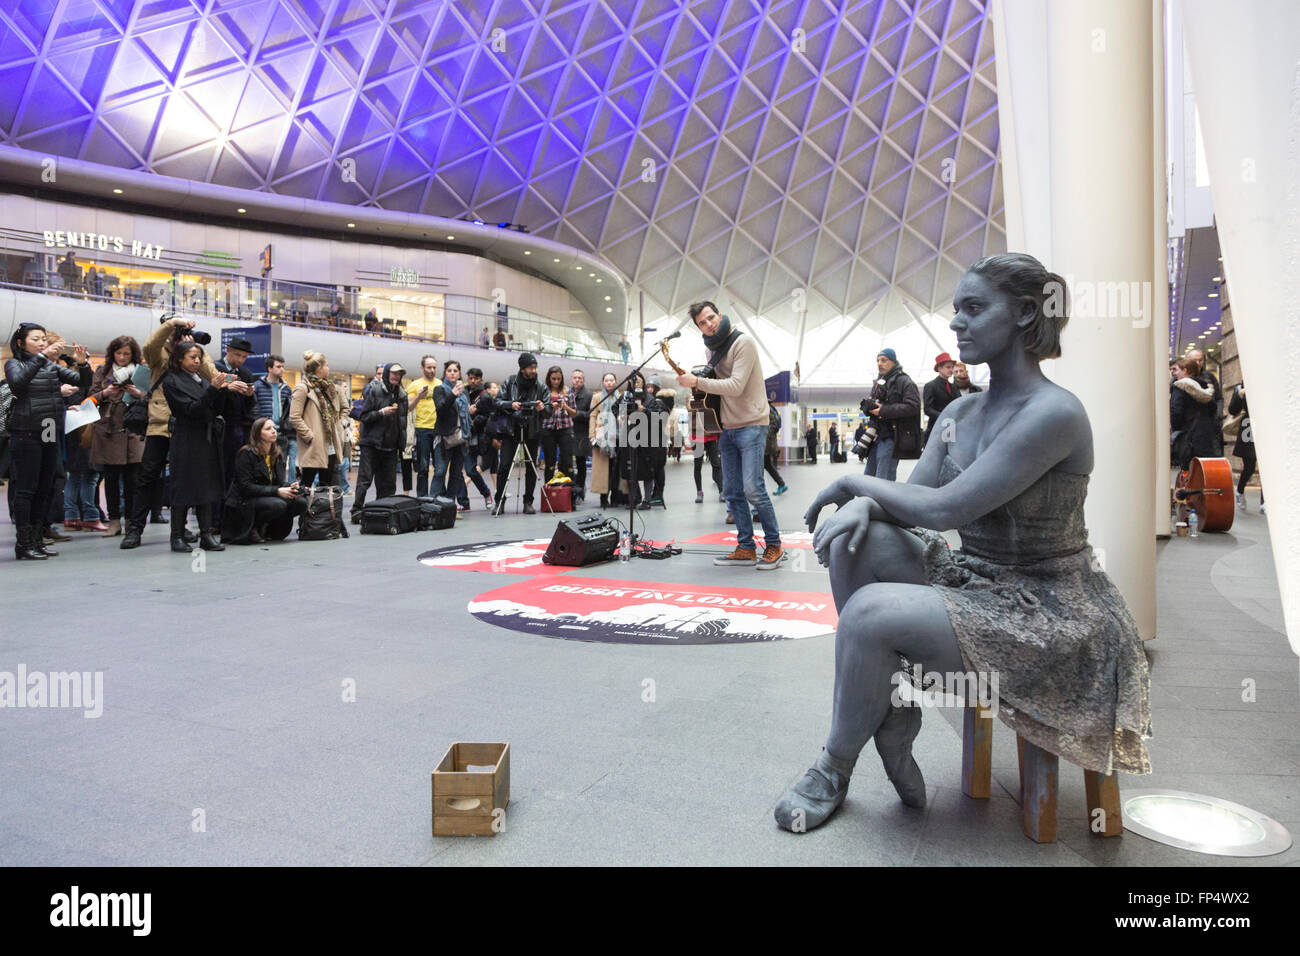 London, UK. 16. März 2016. Luca Fiore, Gewinner des 2015 Busk in London Wettbewerb führt auf das Zusammentreffen der Kings Cross Station. Mit Pippa Moos, lebende Statue einer Ballerina. Stockfoto